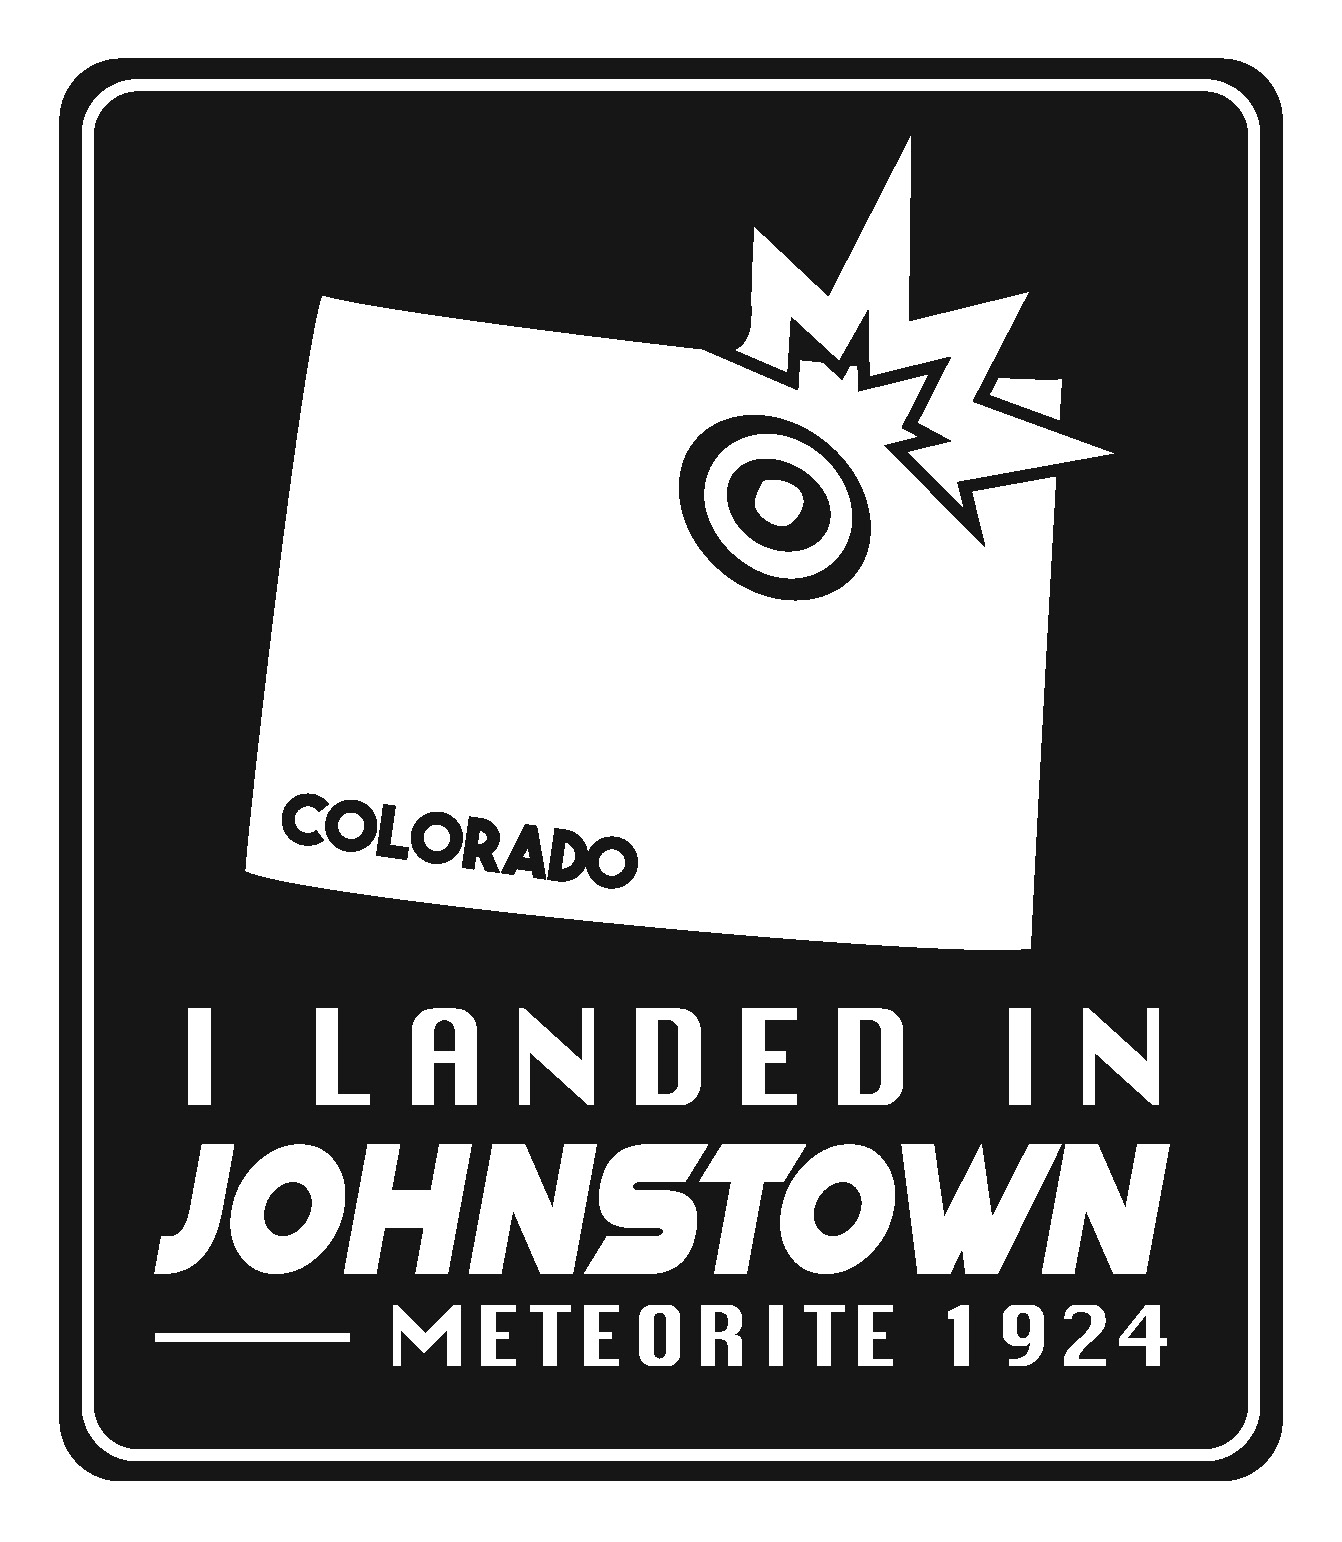 I landed in Johnstown Meteorite 1924